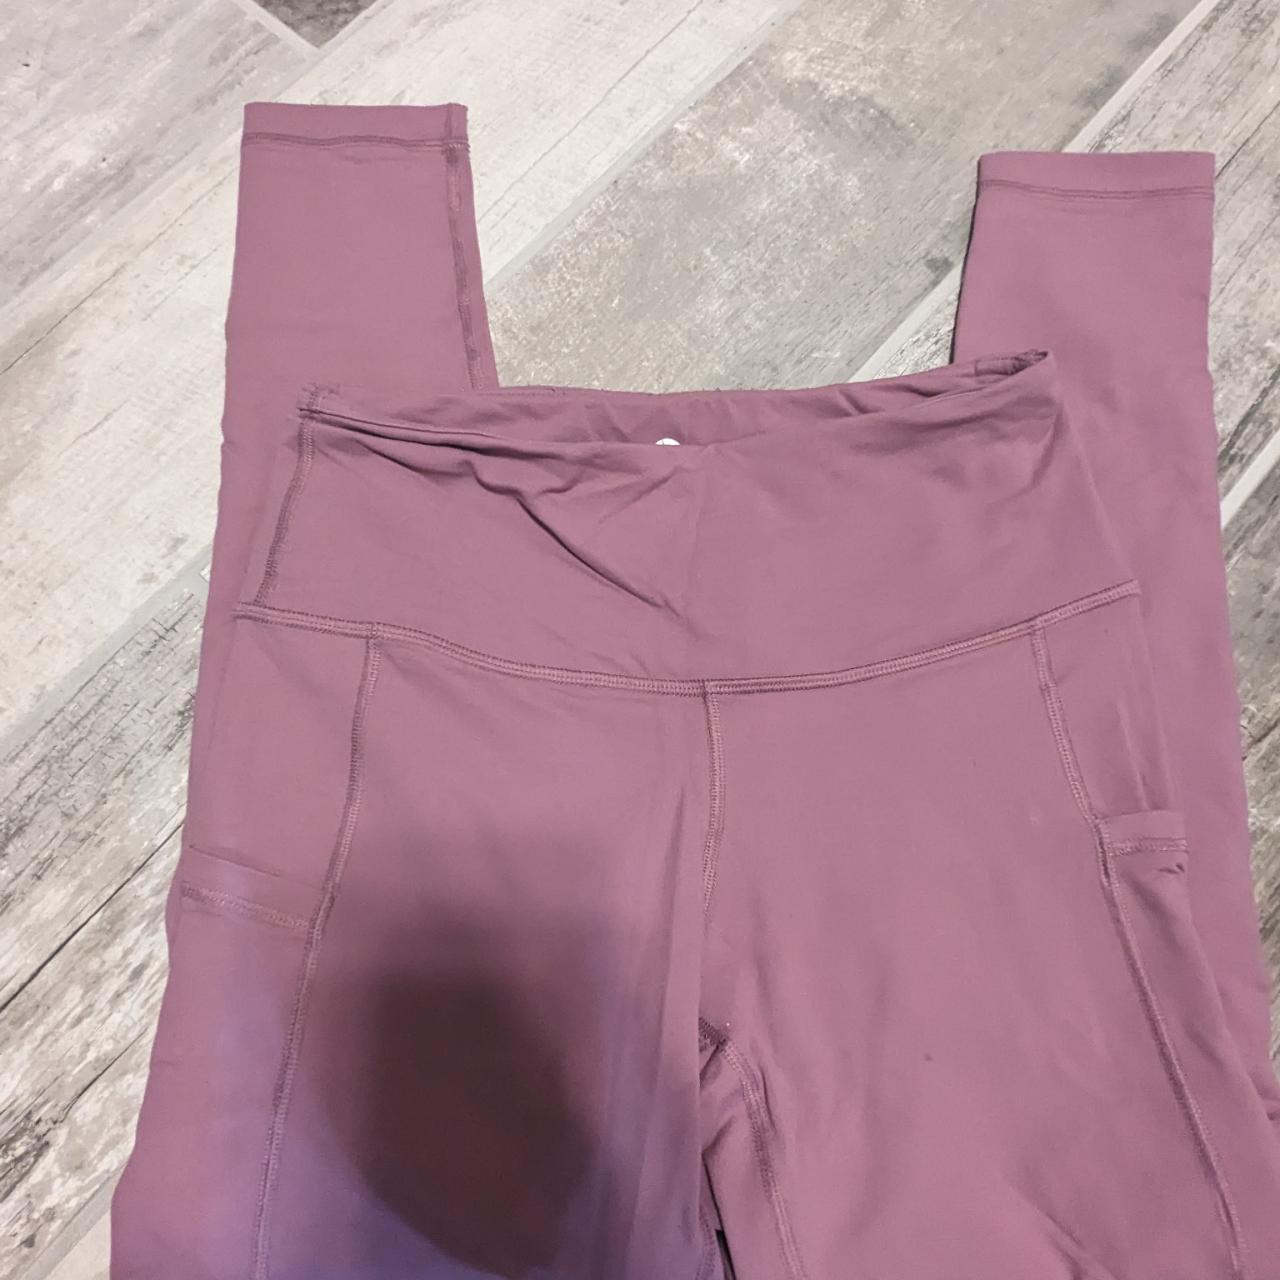 Solid pink (rose pink color) workout leggings, size... - Depop